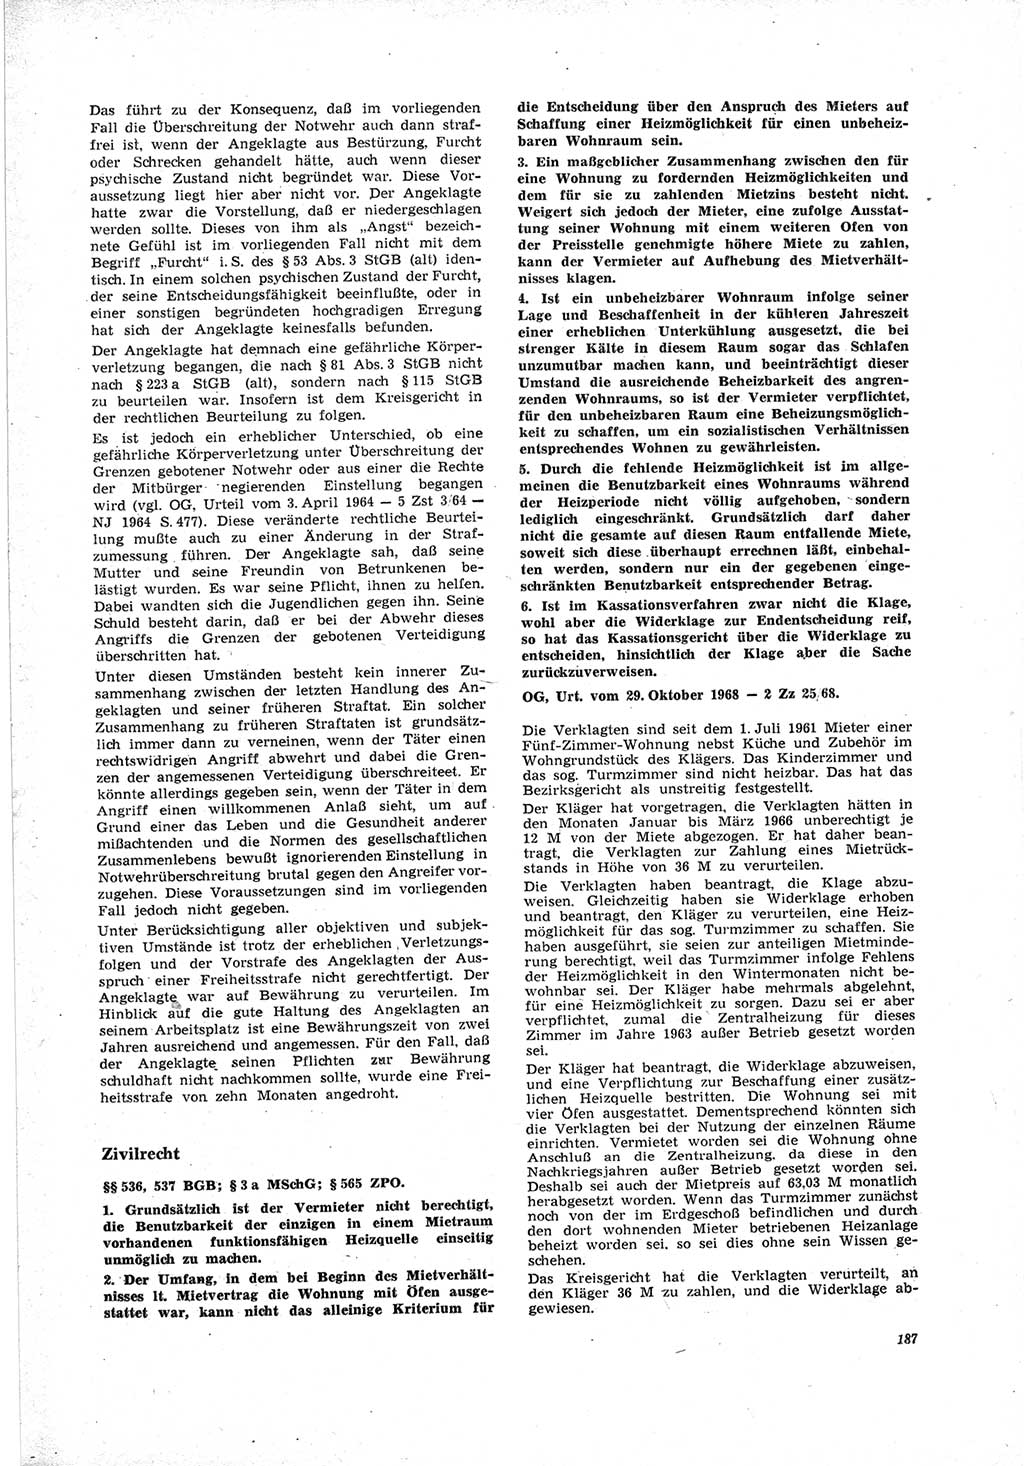 Neue Justiz (NJ), Zeitschrift für Recht und Rechtswissenschaft [Deutsche Demokratische Republik (DDR)], 23. Jahrgang 1969, Seite 187 (NJ DDR 1969, S. 187)